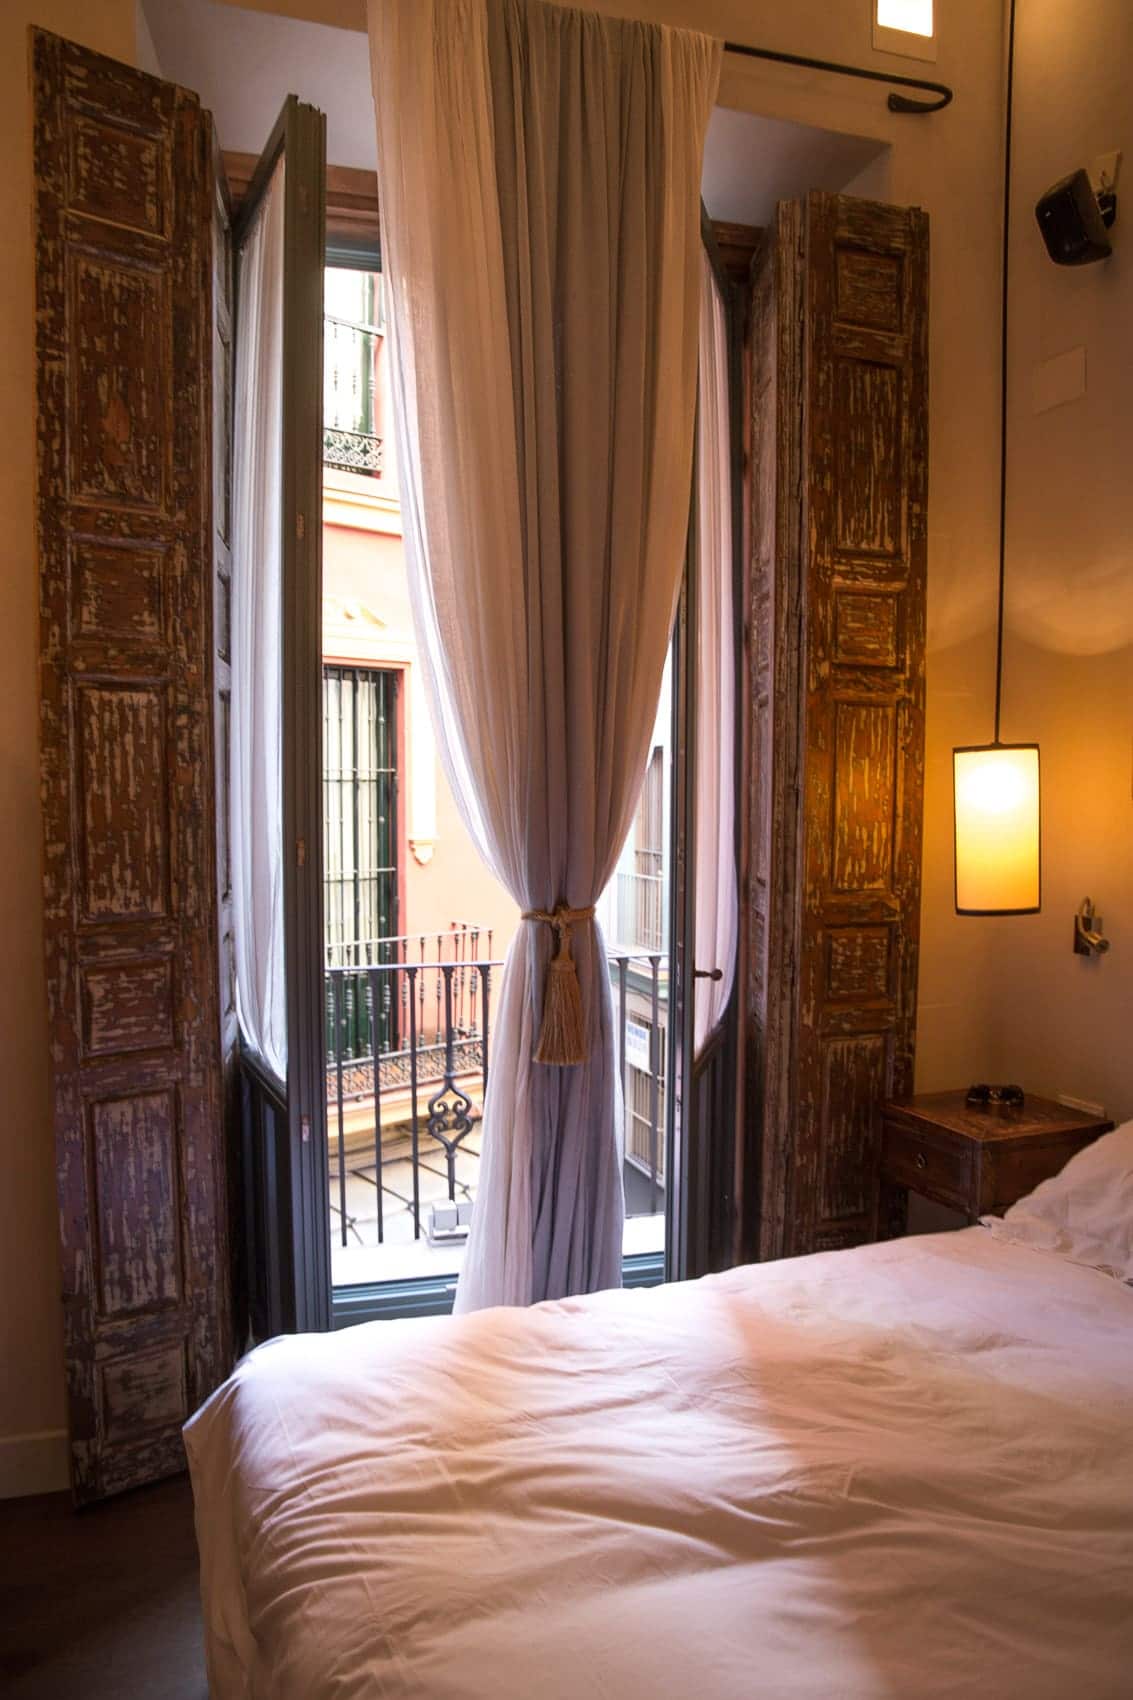 4-Sterne Hotel Corral del Rey der Altstadt von Sevilla